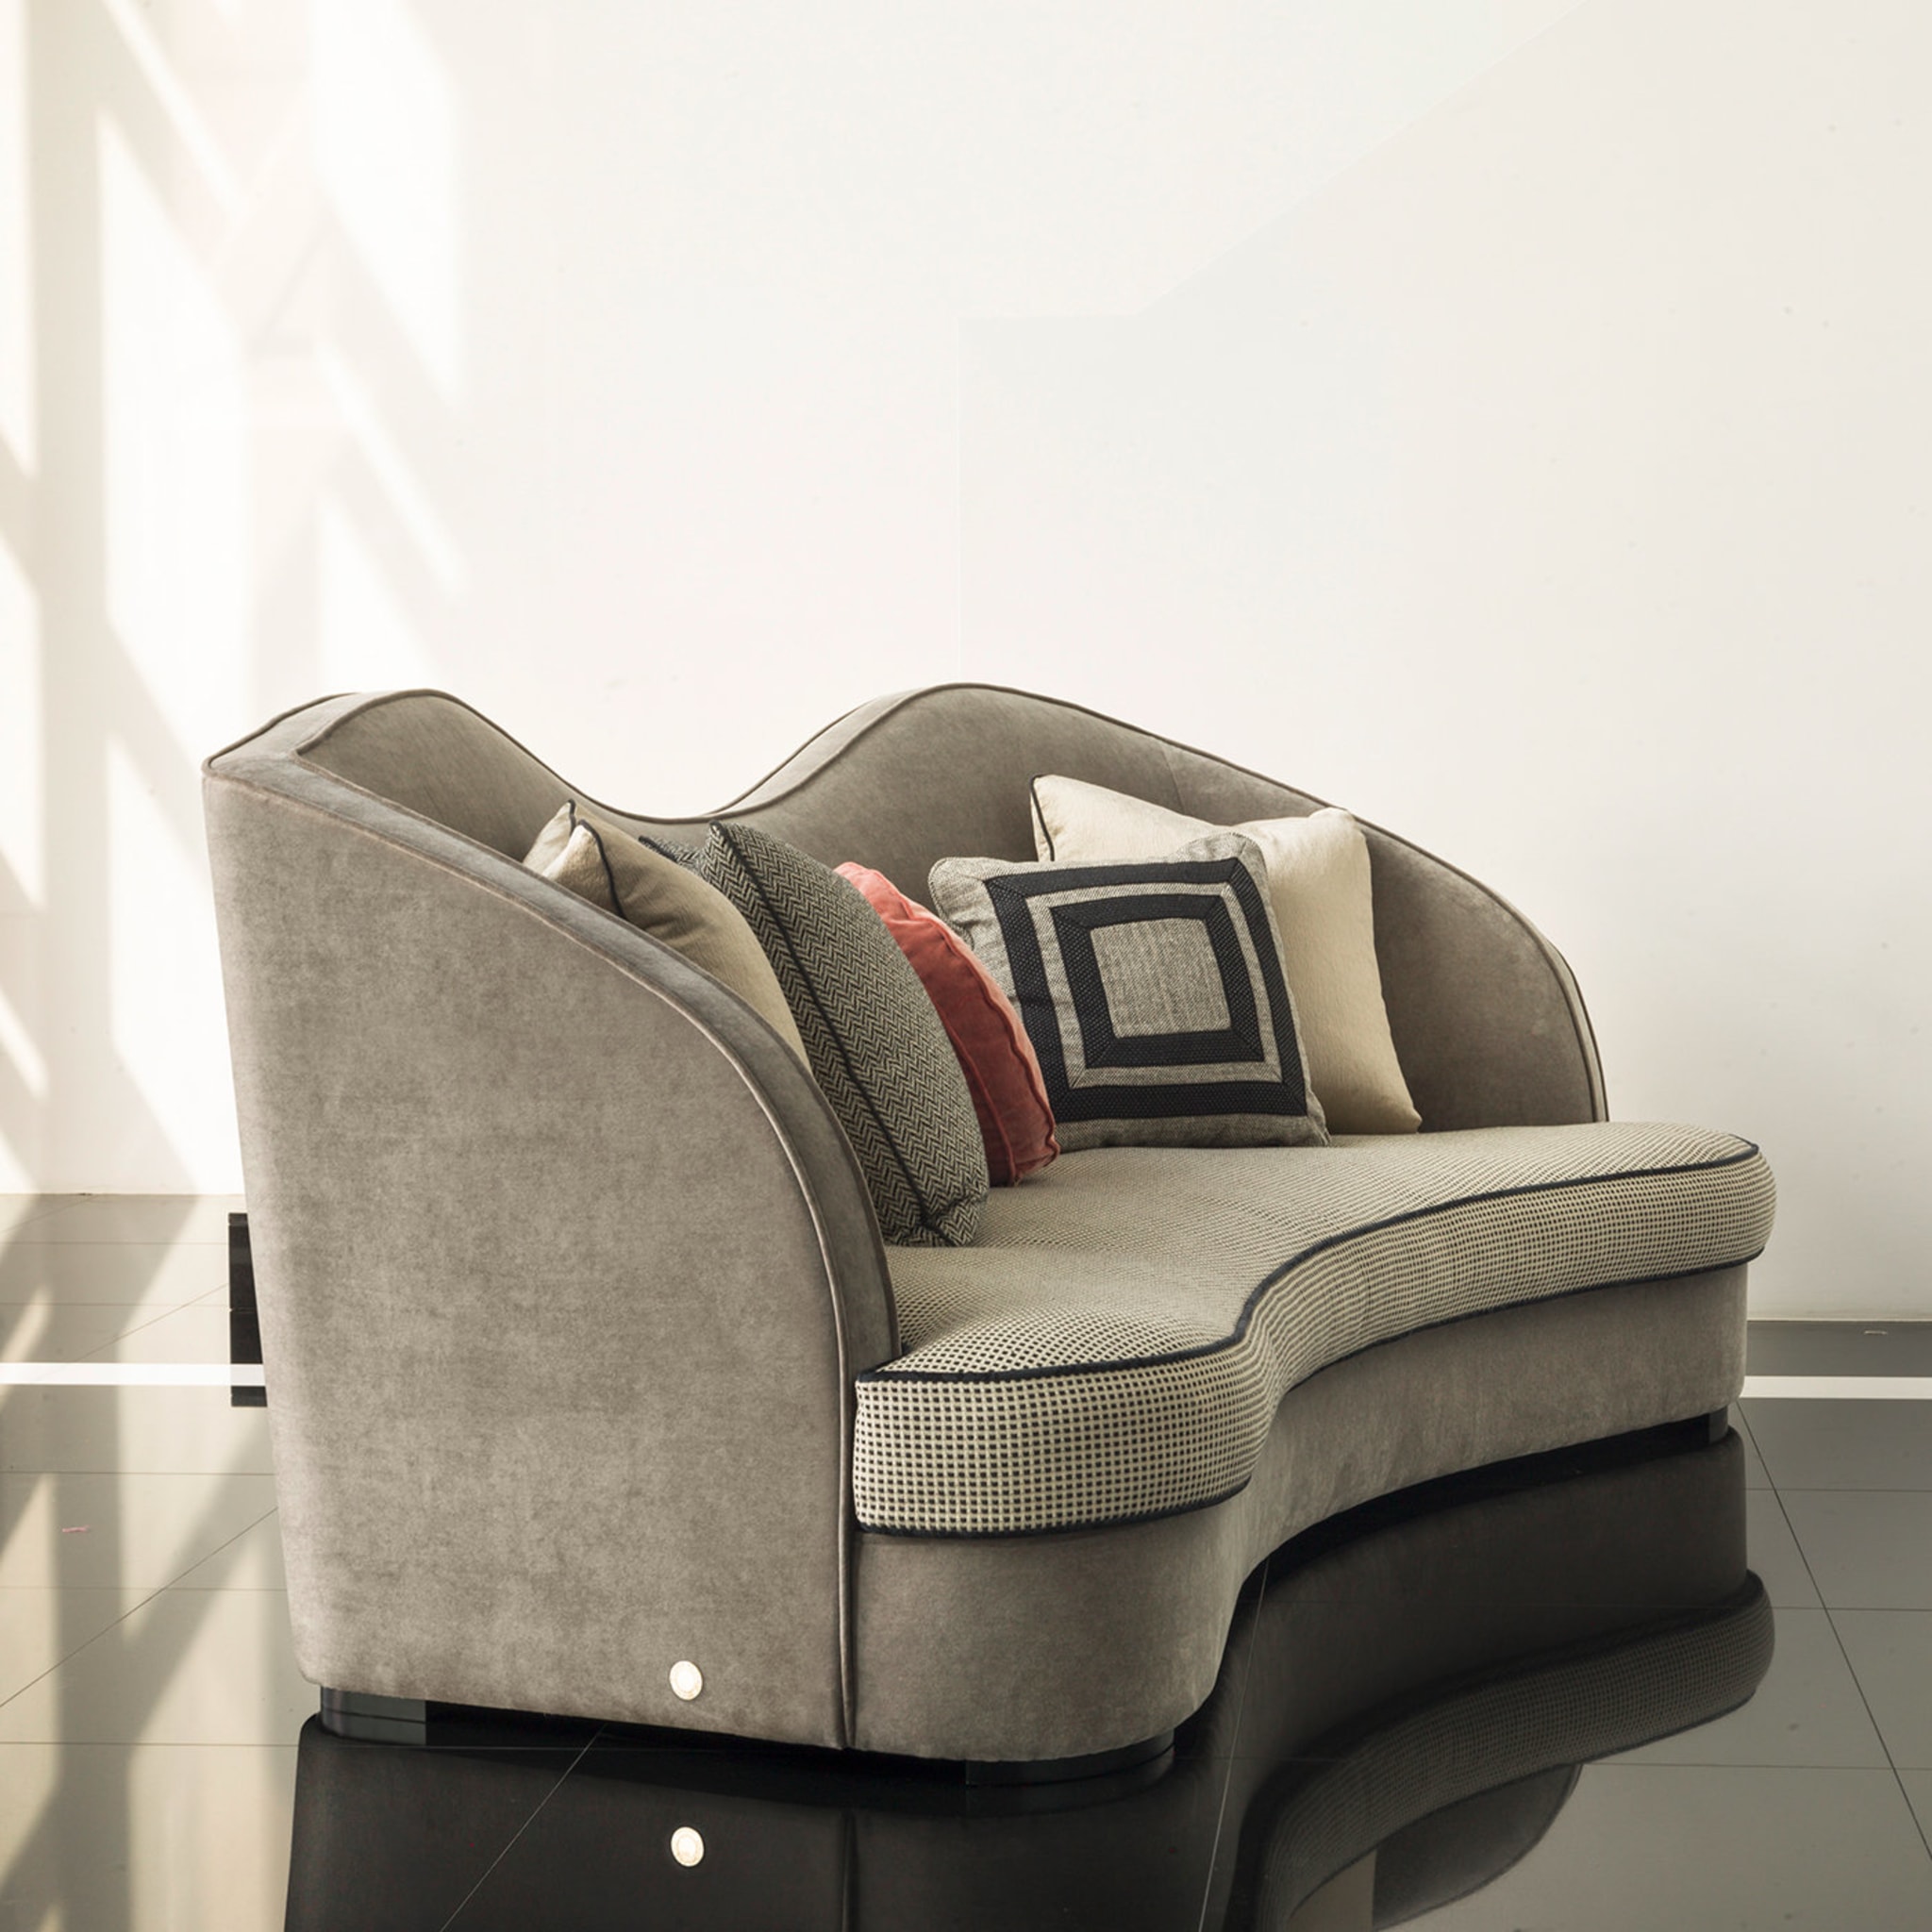 Gianni 3-Seat Sofa - Alternative view 1